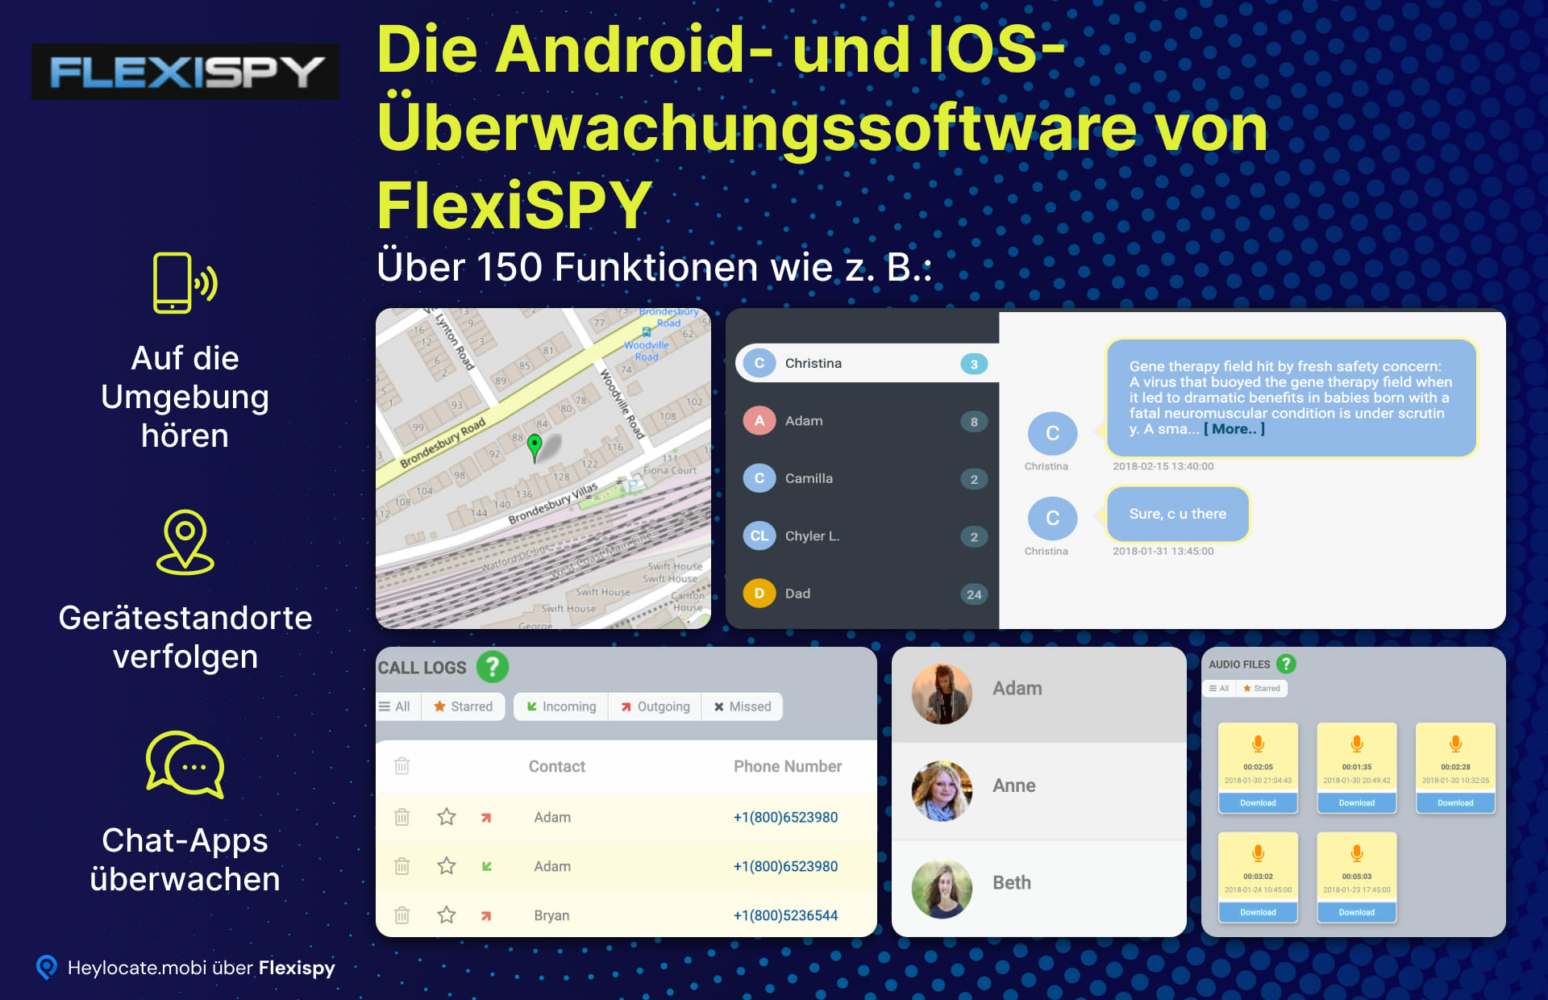 Ein Überblick über die Überwachungsfunktionen von FlexiSPY für Android- und iOS-Geräte, wobei Funktionen wie das Abhören der Umgebung, die Verfolgung von Gerätestandorten und die Überwachung verschiedener Chat-Anwendungen hervorgehoben werden, mit visuellen Beispielen der Software-Schnittstelle.